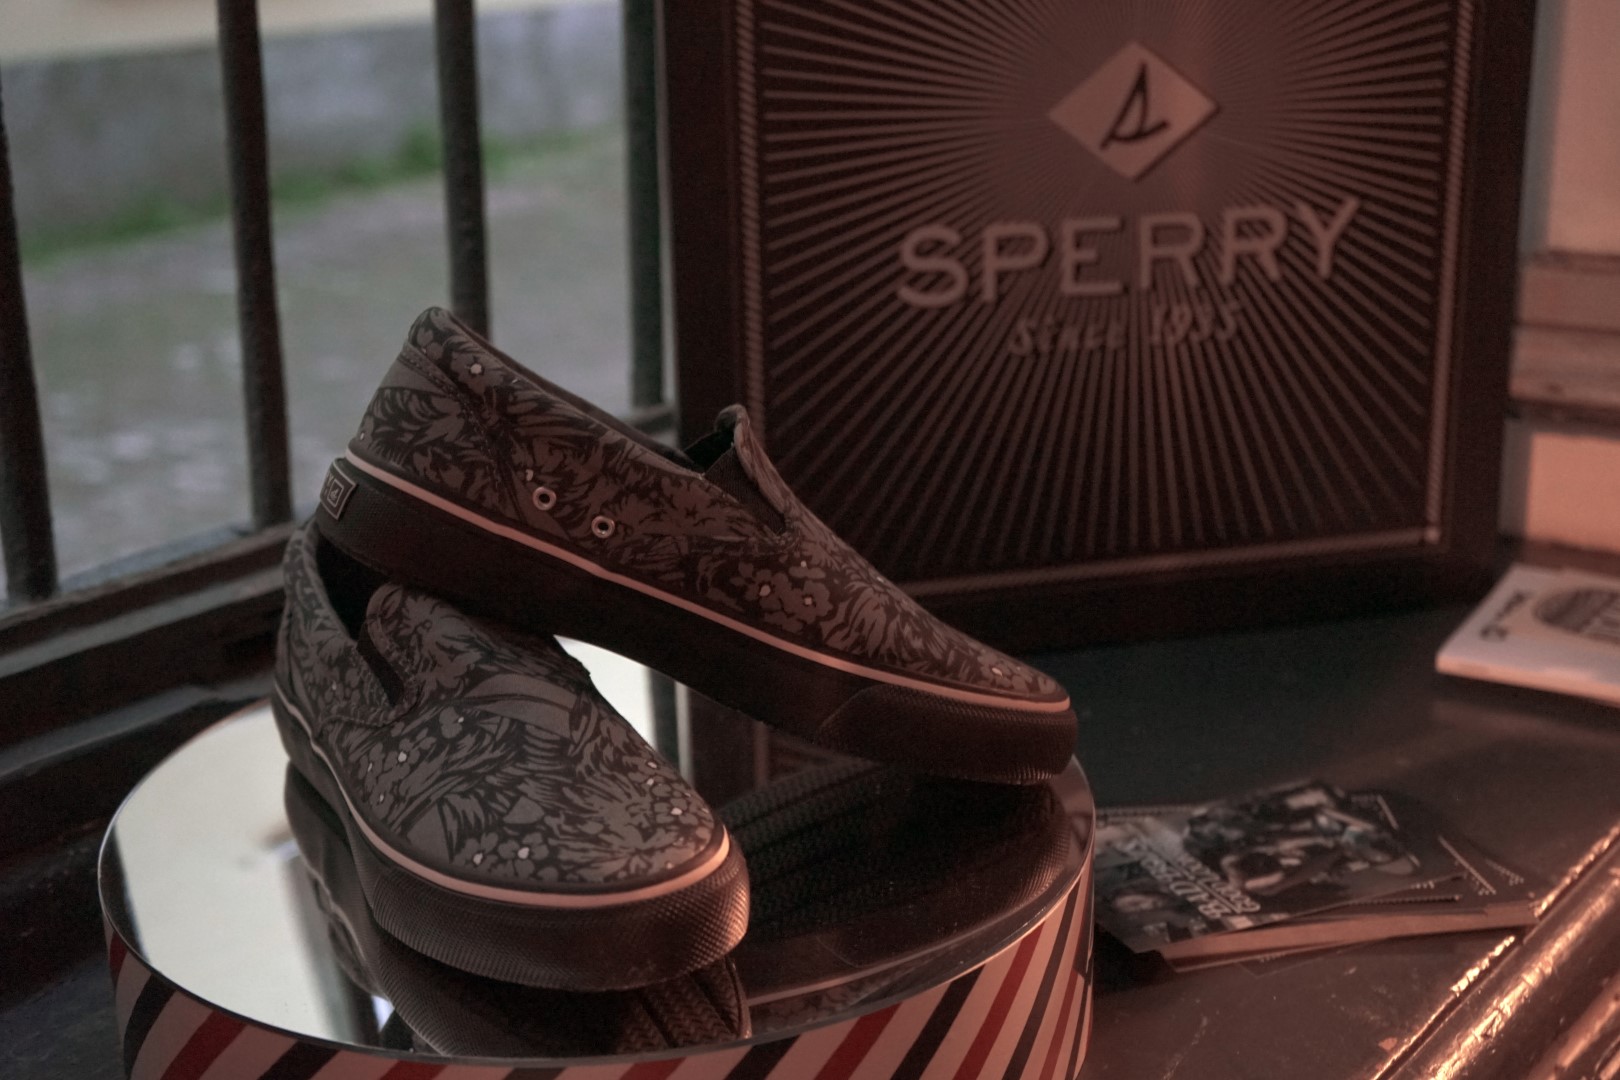 Sperry scarpe da barca: il party per il lancio della campagna &#8220;Bad Boys, Good Looking&#8221;